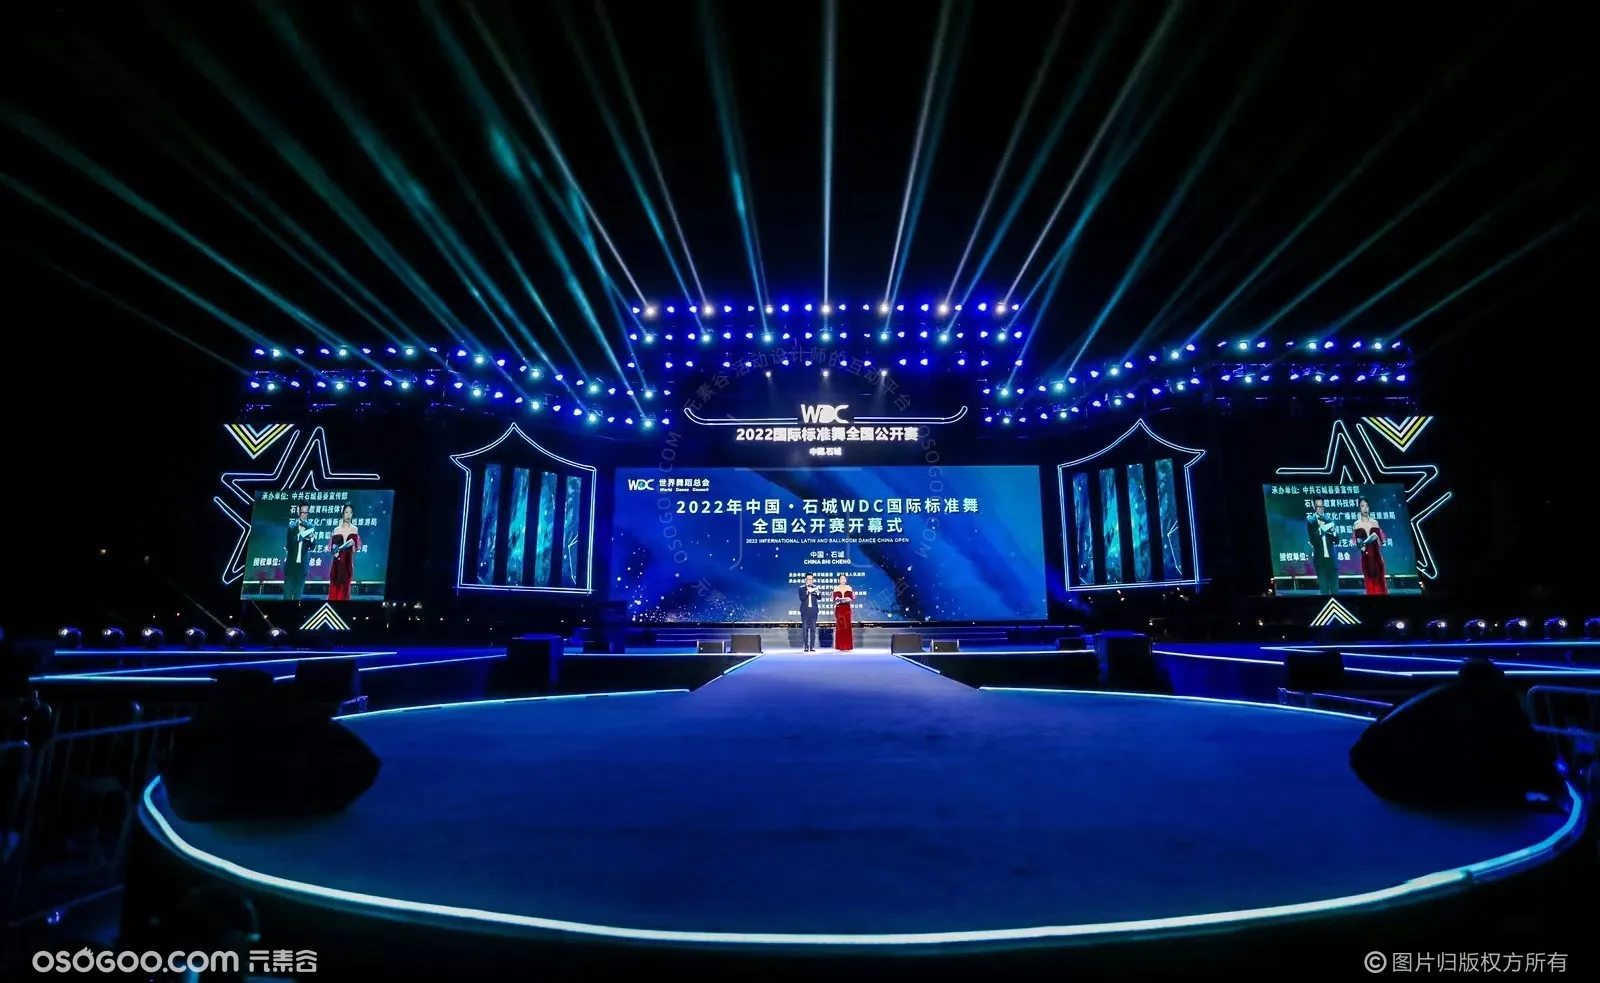 2022年中国·石城WDC国际标准舞全国公开赛大型文艺晚会暨